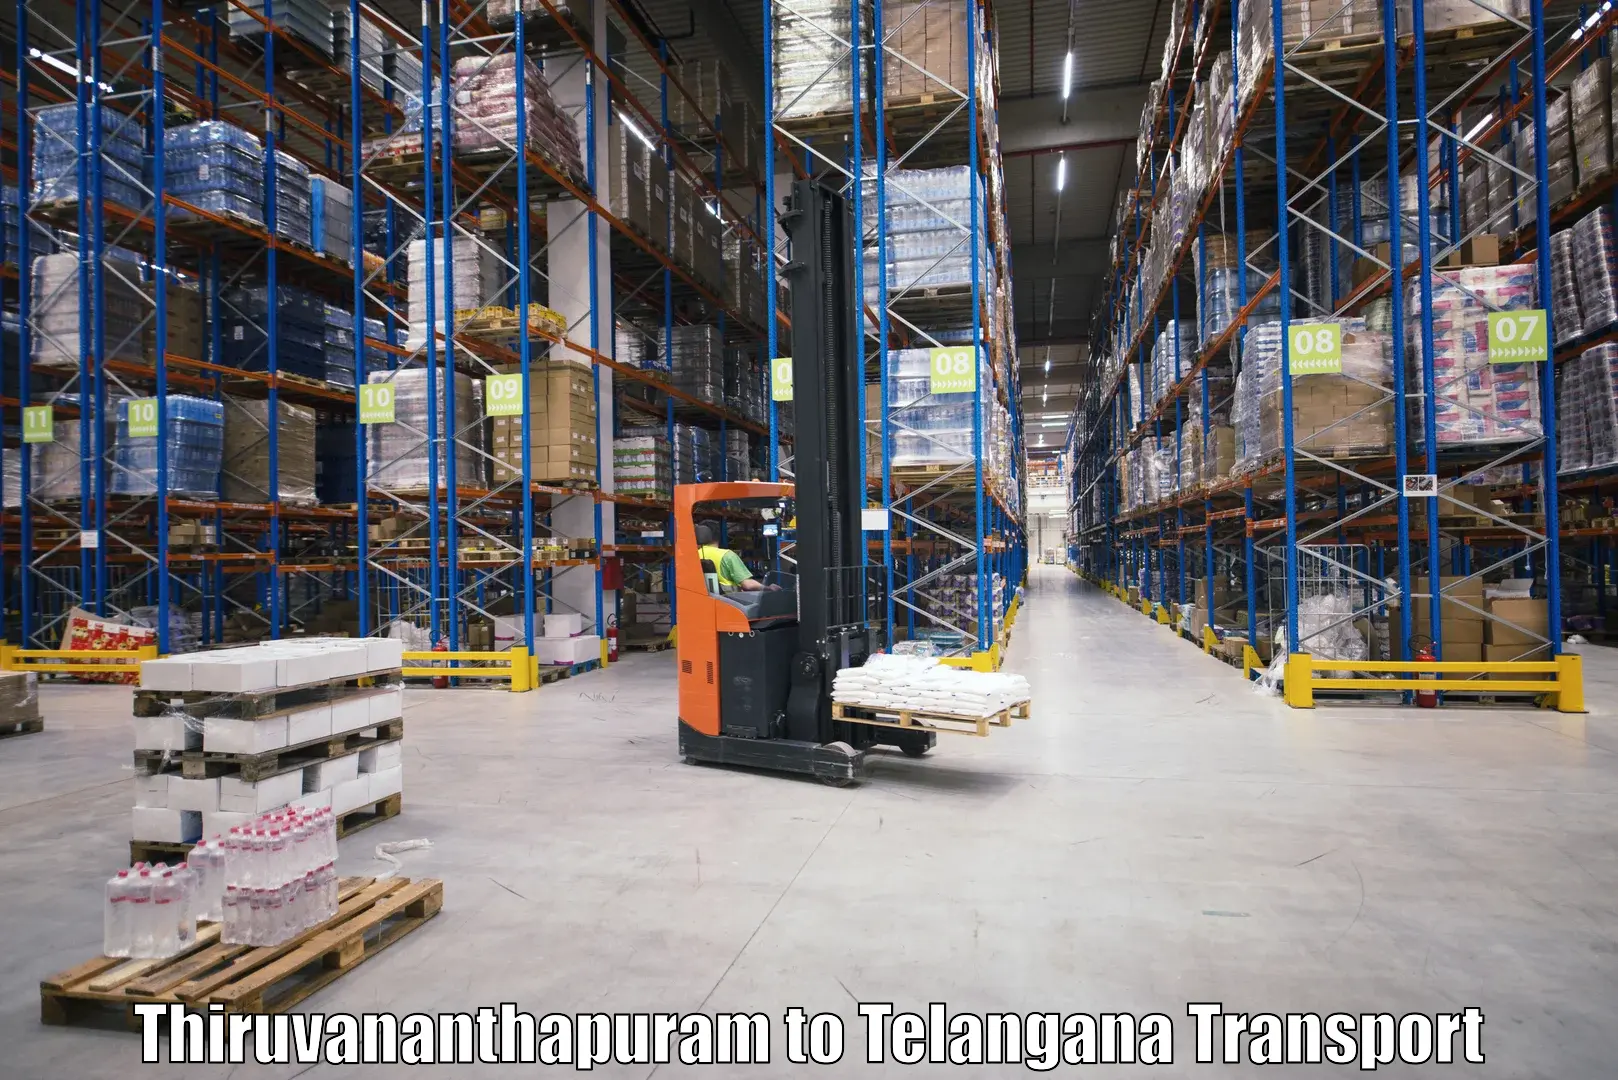 Express transport services Thiruvananthapuram to Gangadhara